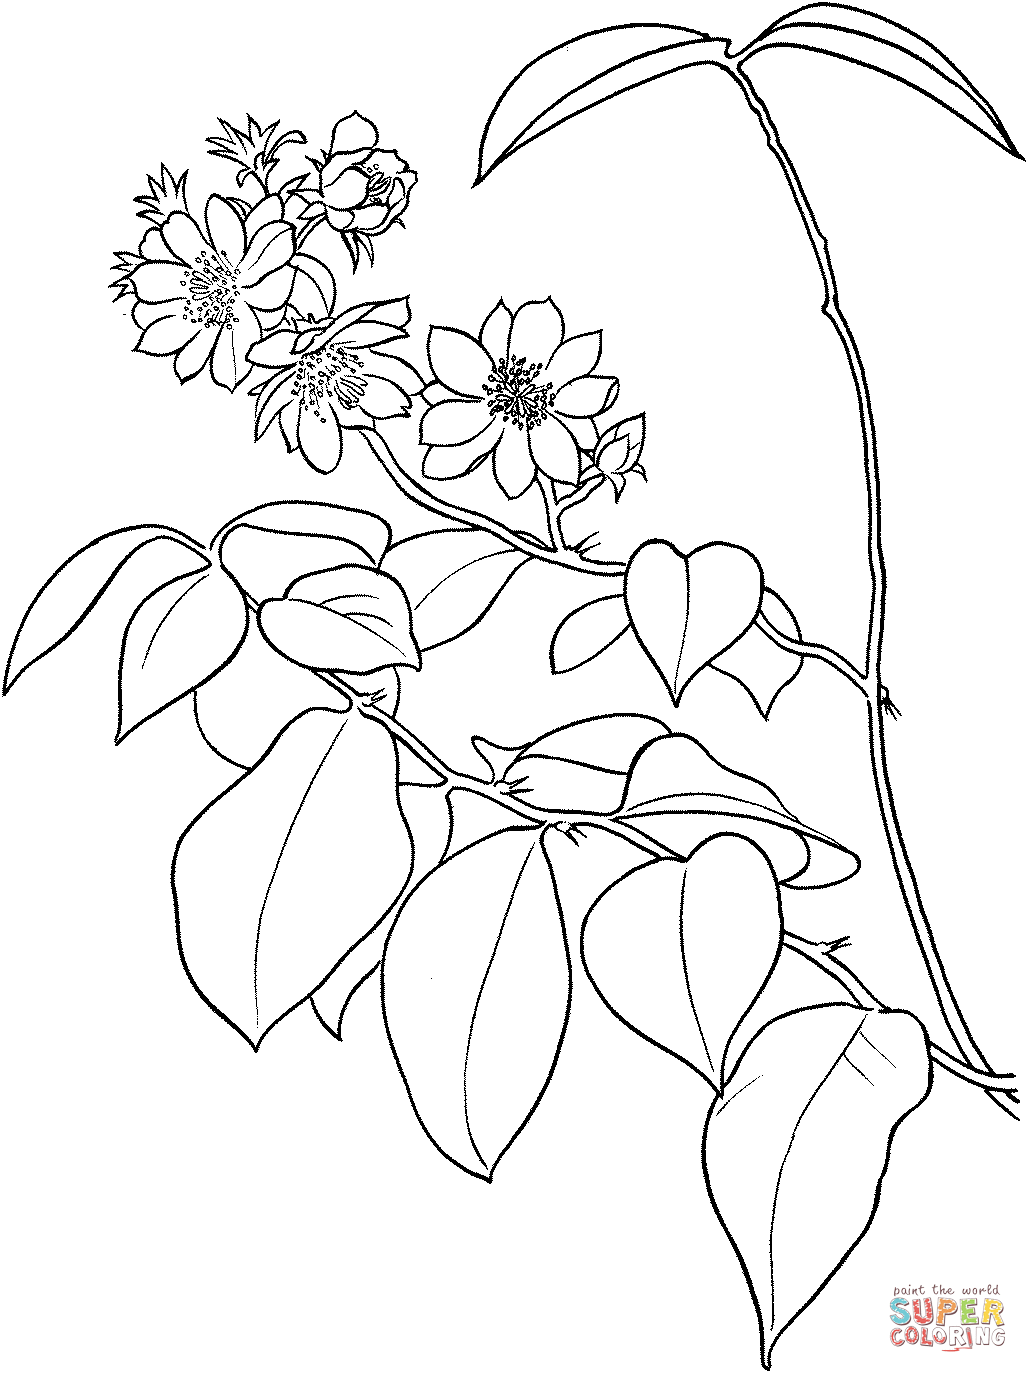 Pereskia Aculeata o uva spina delle Barbados o cactus fogliare di Cactus